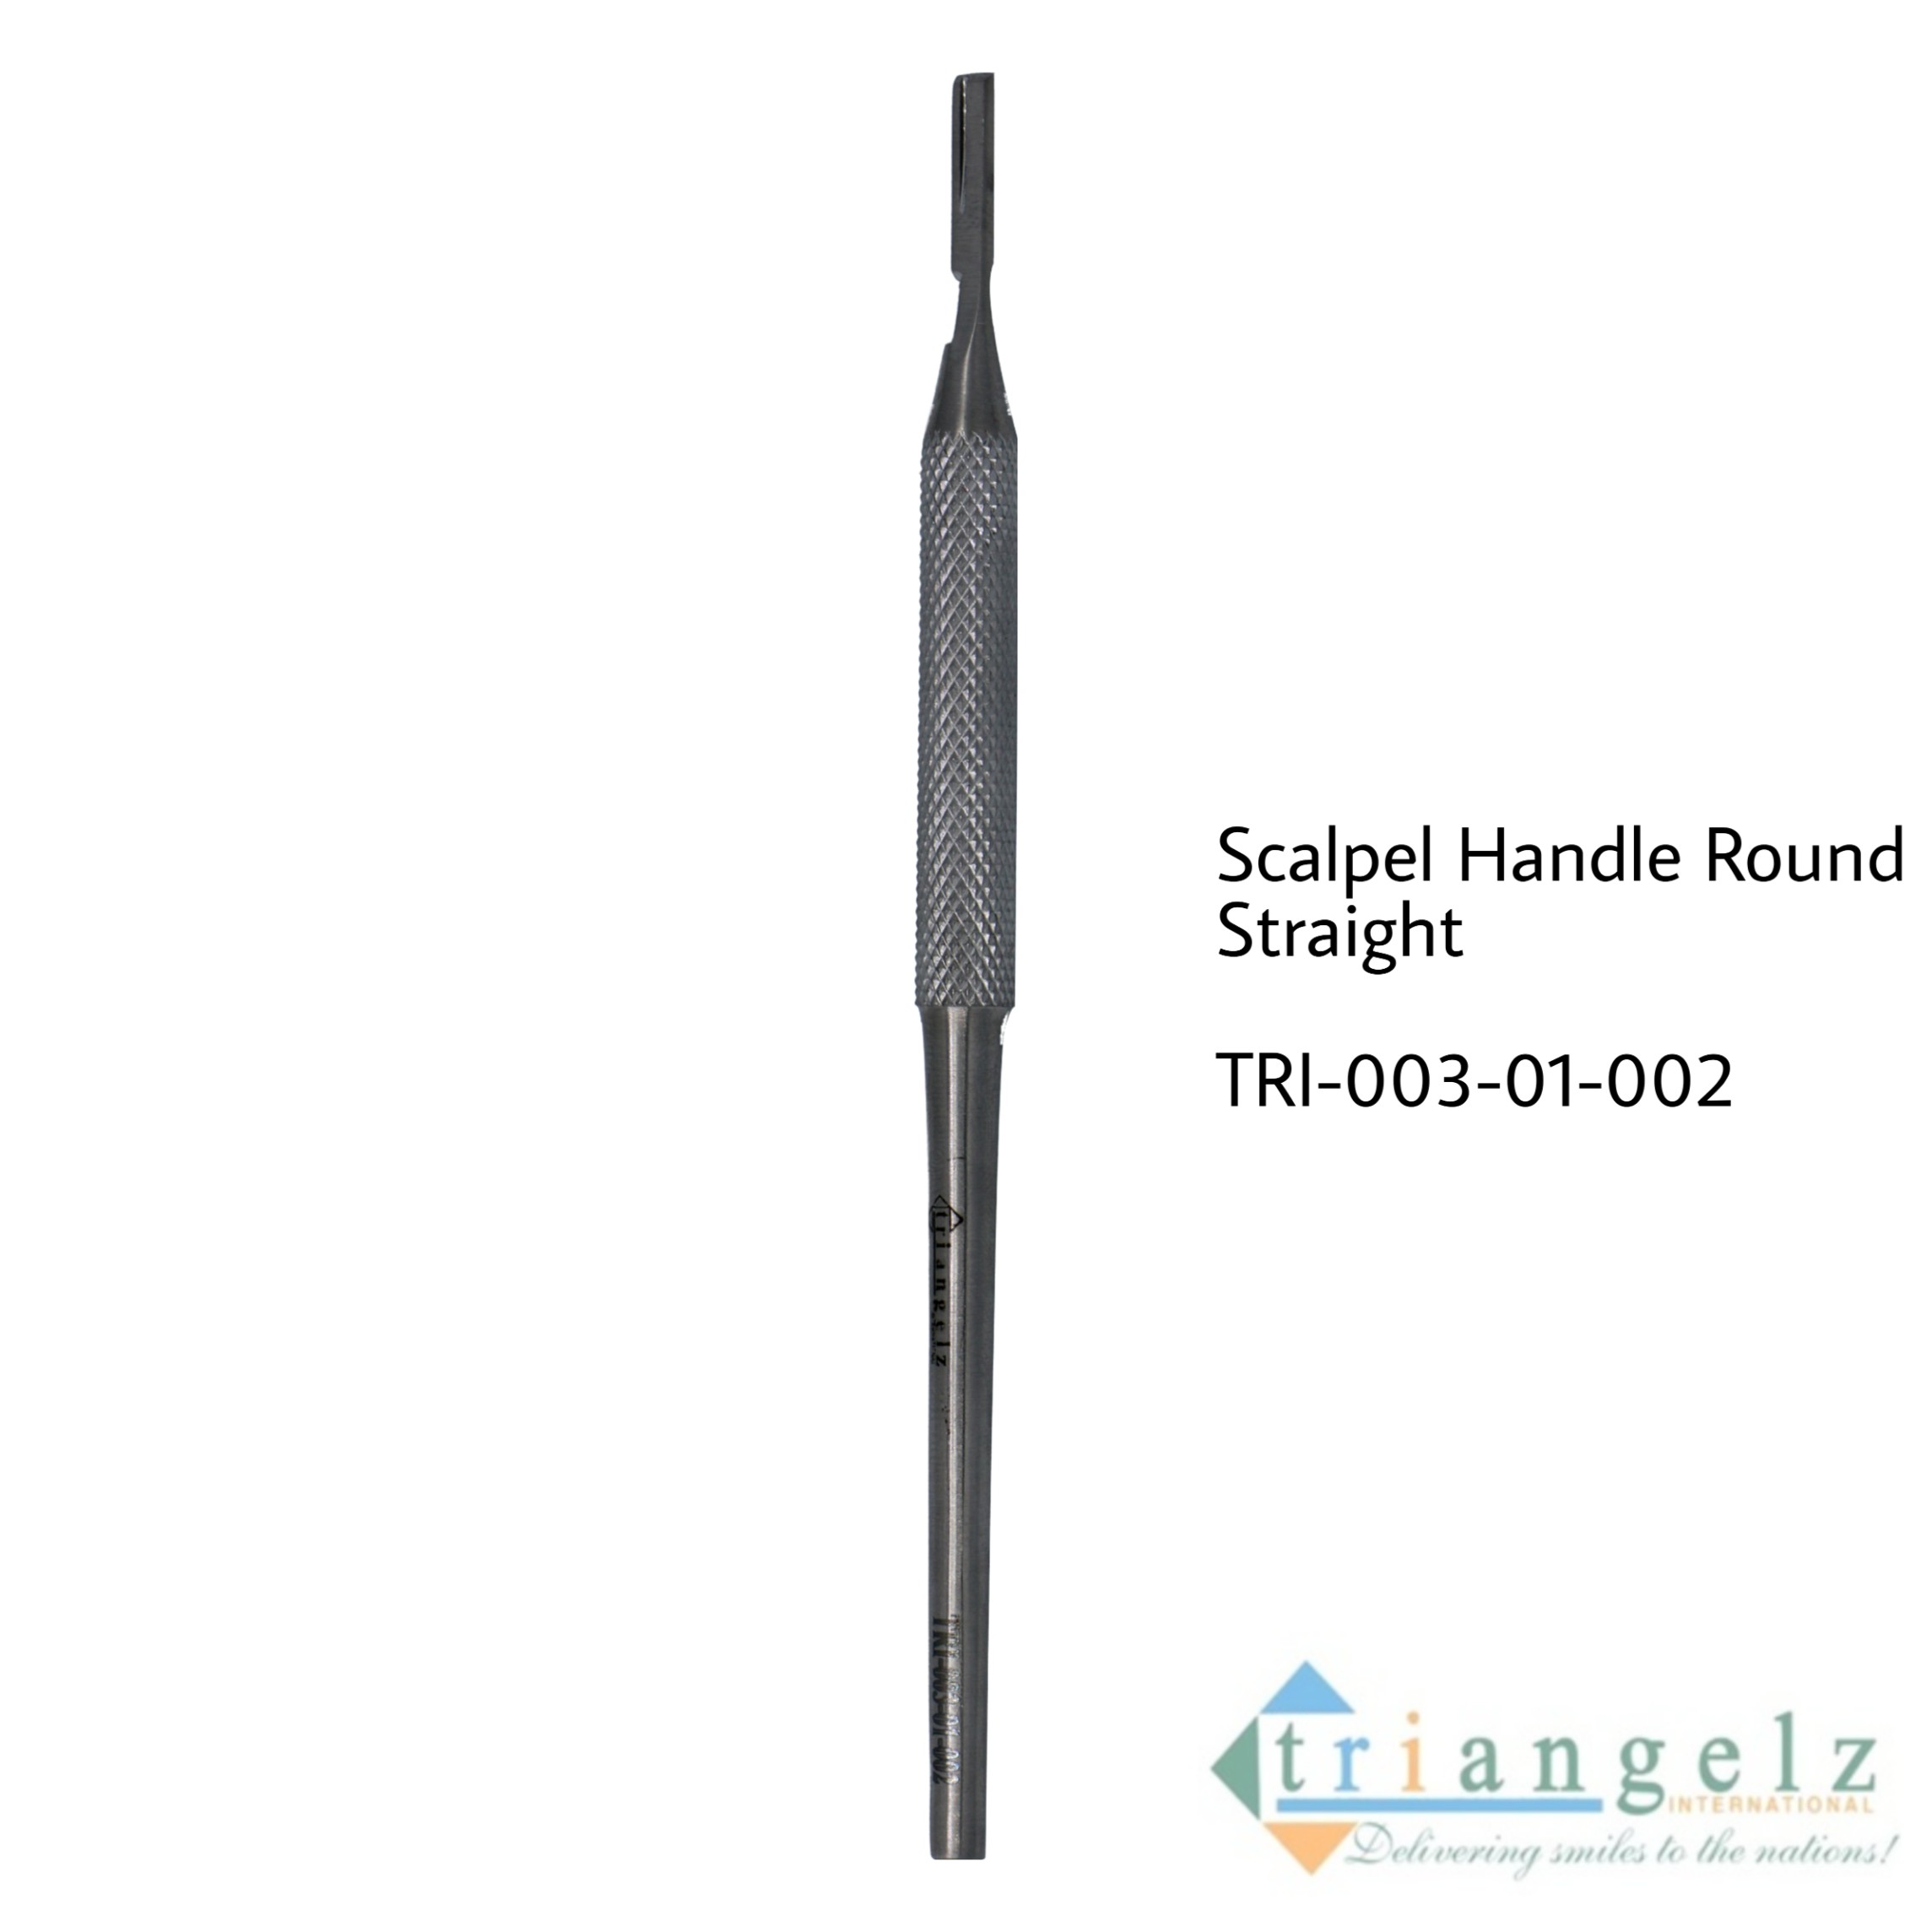 TRI-003-01-002 Scalpel Handle Round Stright